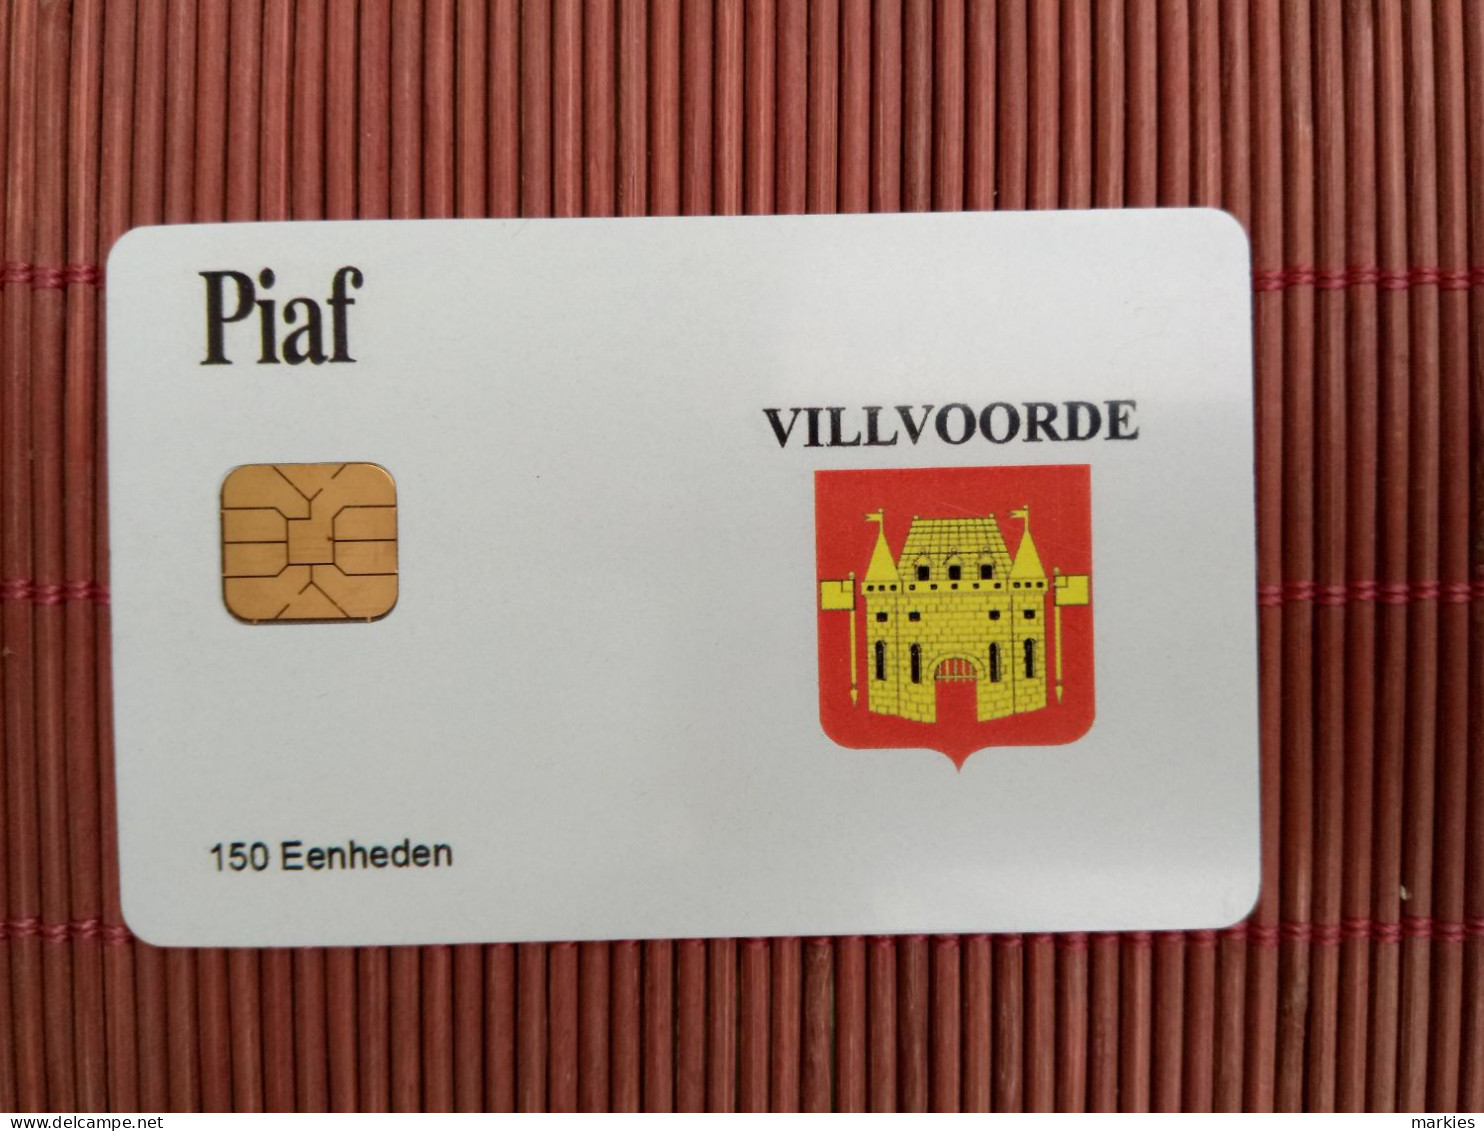 Carte Piaf  Villvoorde Ony 500 Ex Made 2 Photos Used Rare - PIAF Parking Cards